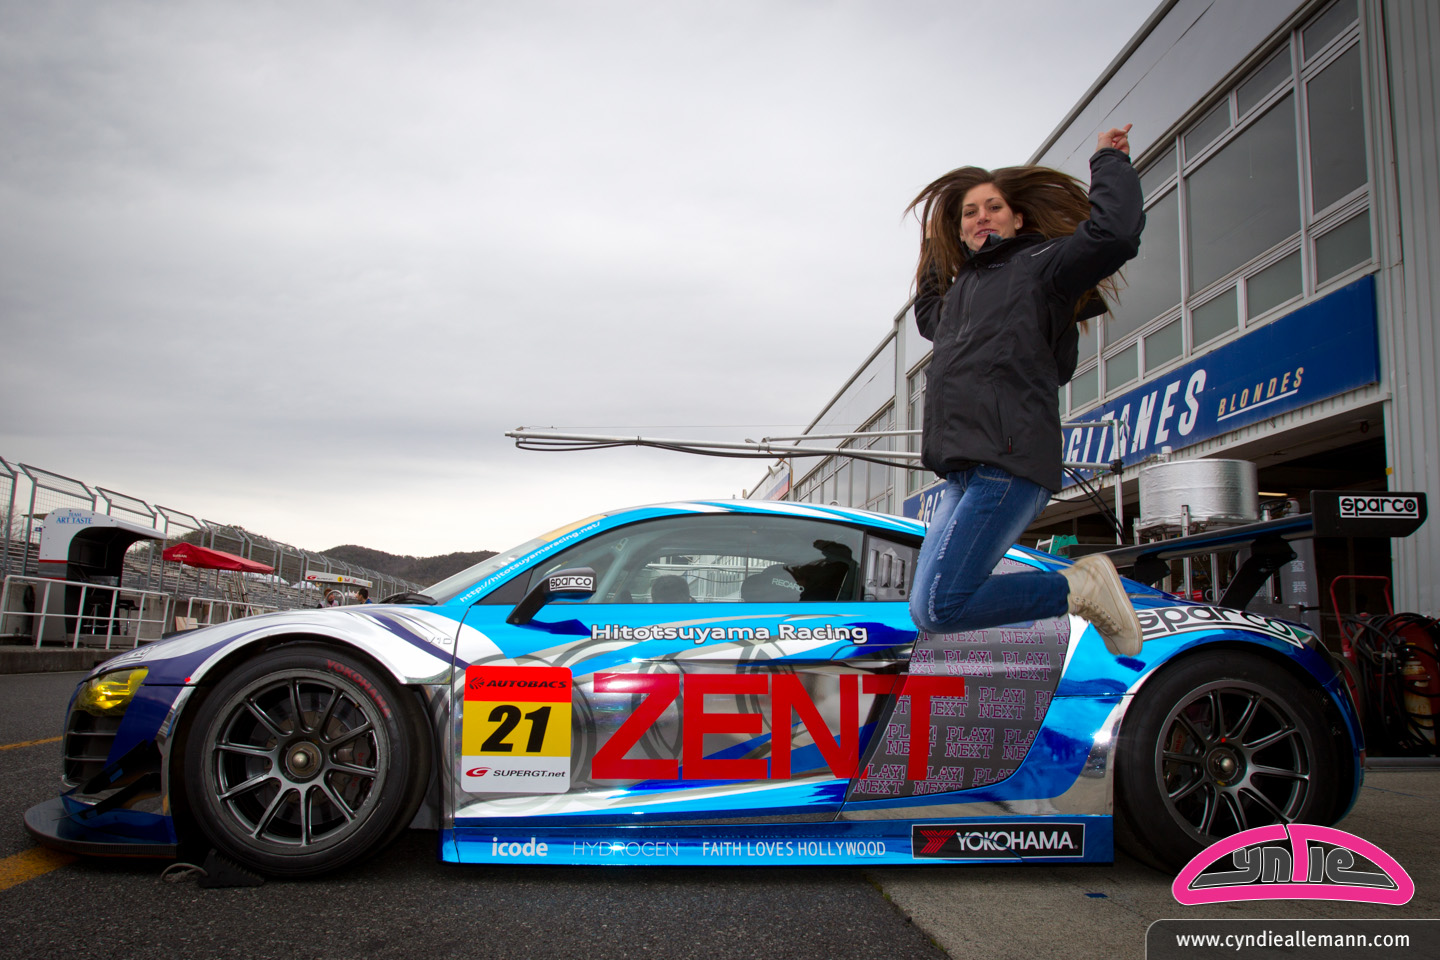 Premier test en Super GT: Cyndie Allemann passe le ‘rookie test’ avec succès